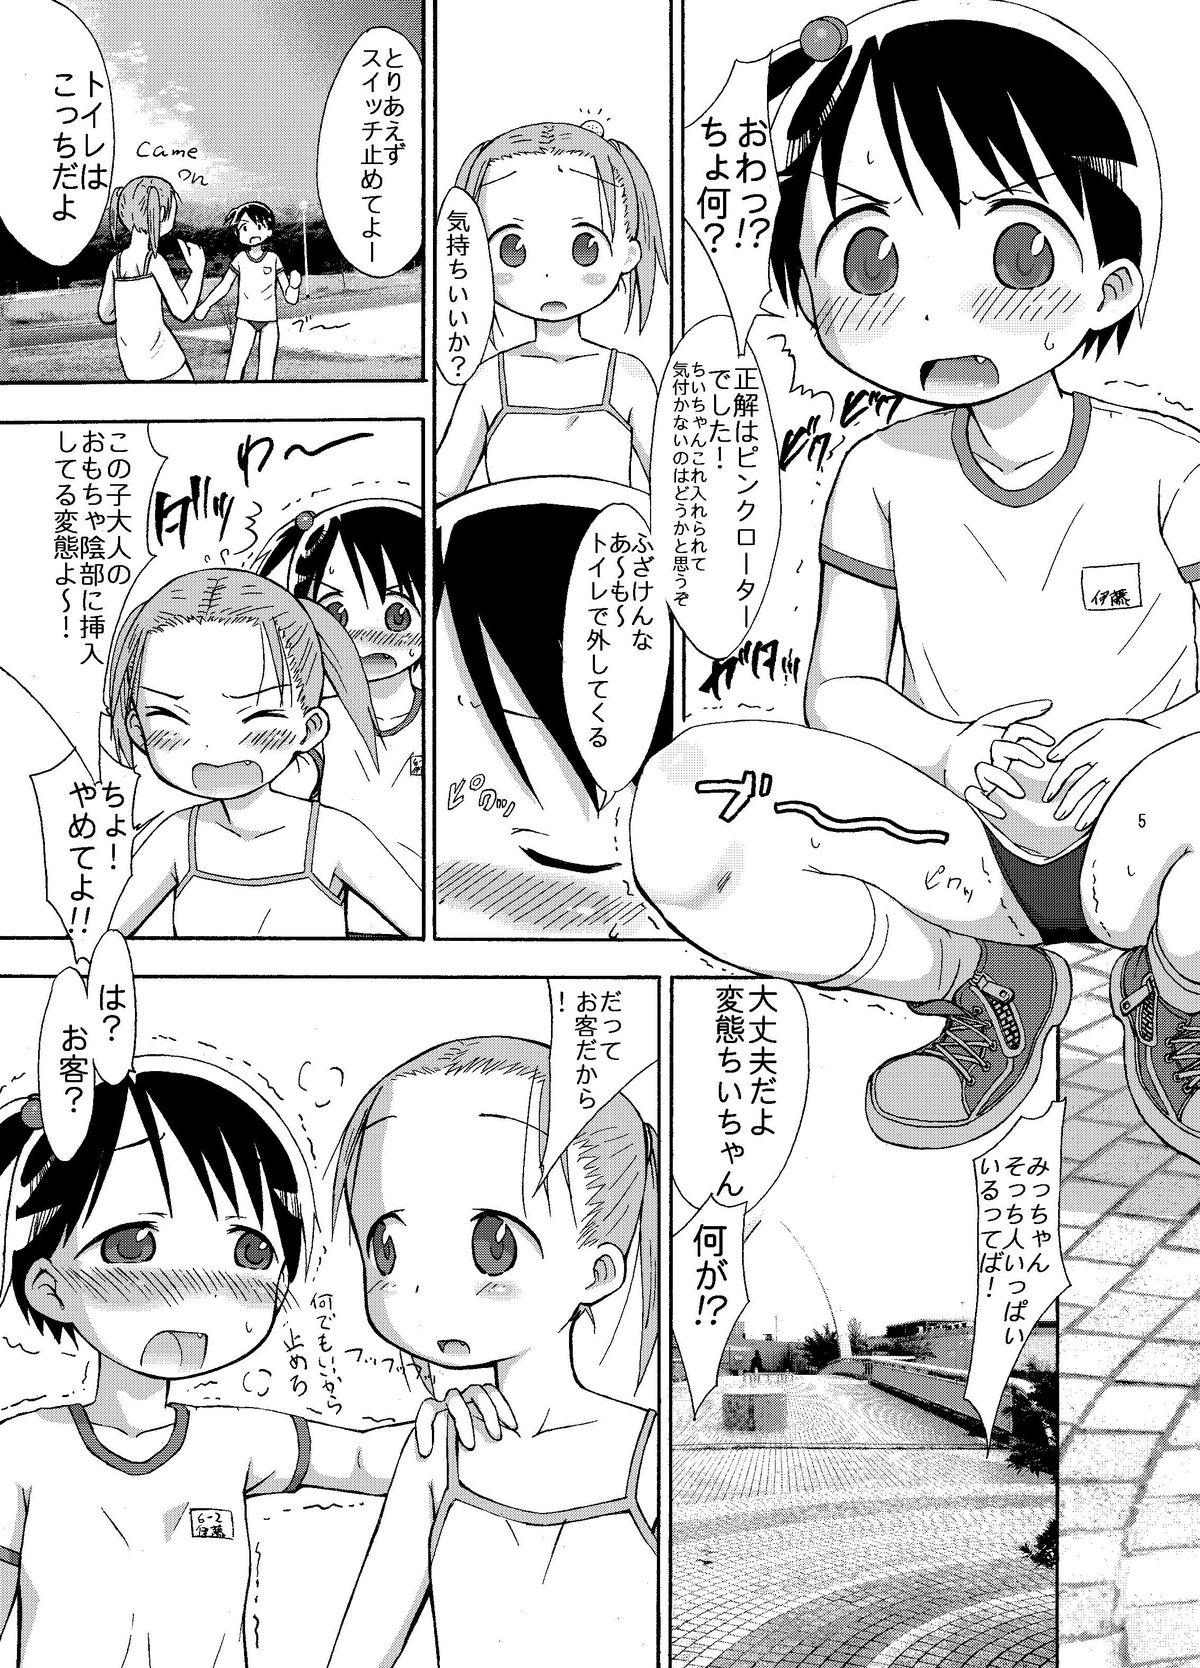 Spreadeagle mashimaro ism L - Ichigo mashimaro Ass Fetish - Page 5